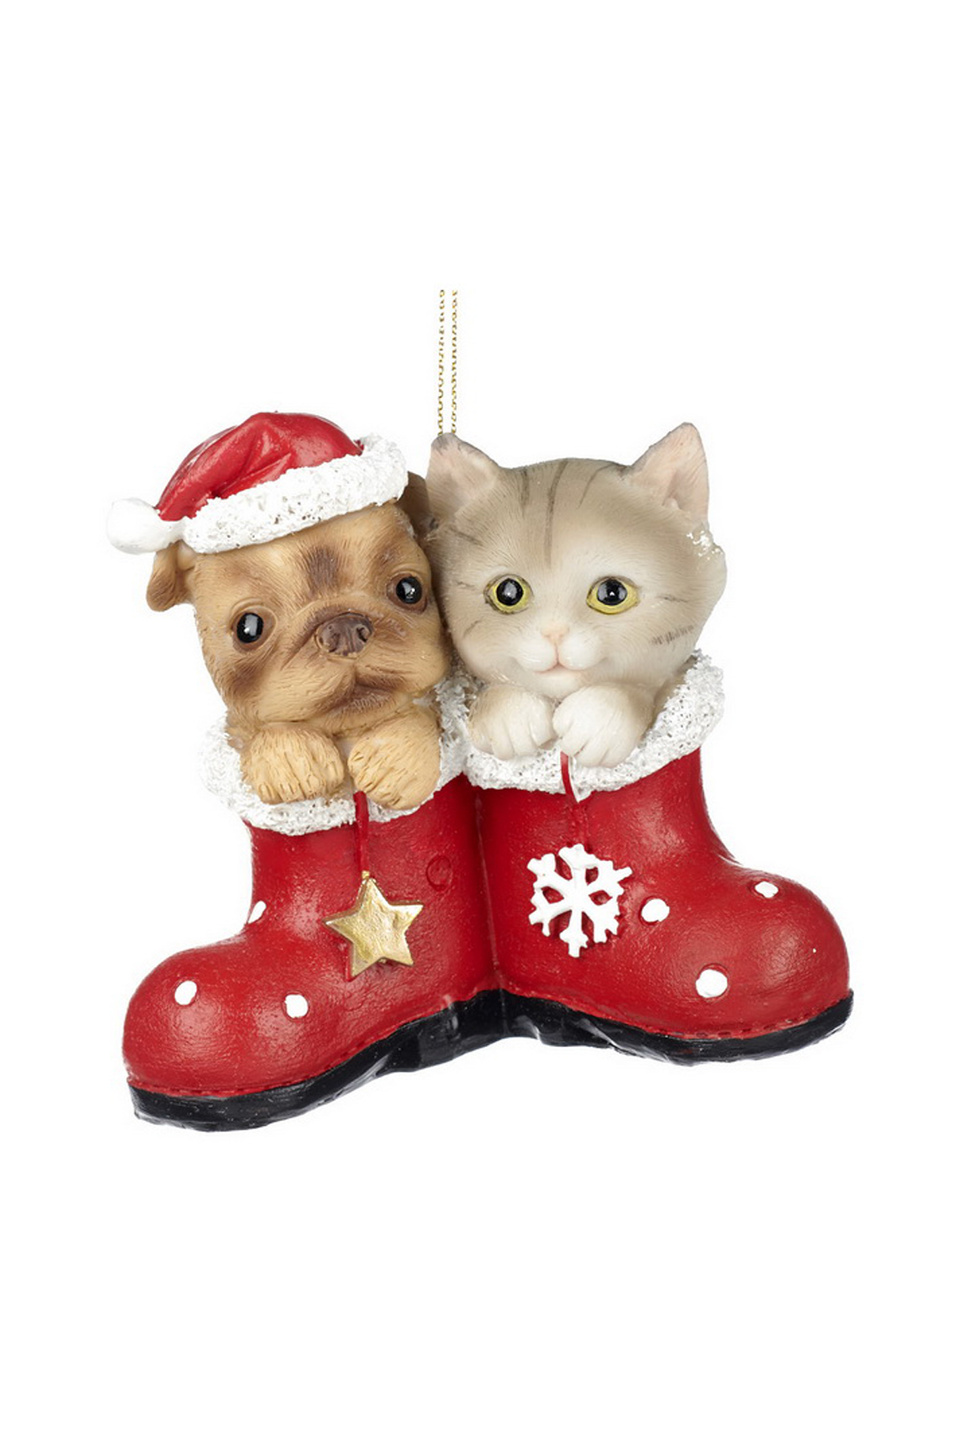 Goodwill Елочная игрушка "Котенок и щенок в сапоге" 9,5 см (цвет ), артикул MC 35010 | Фото 1